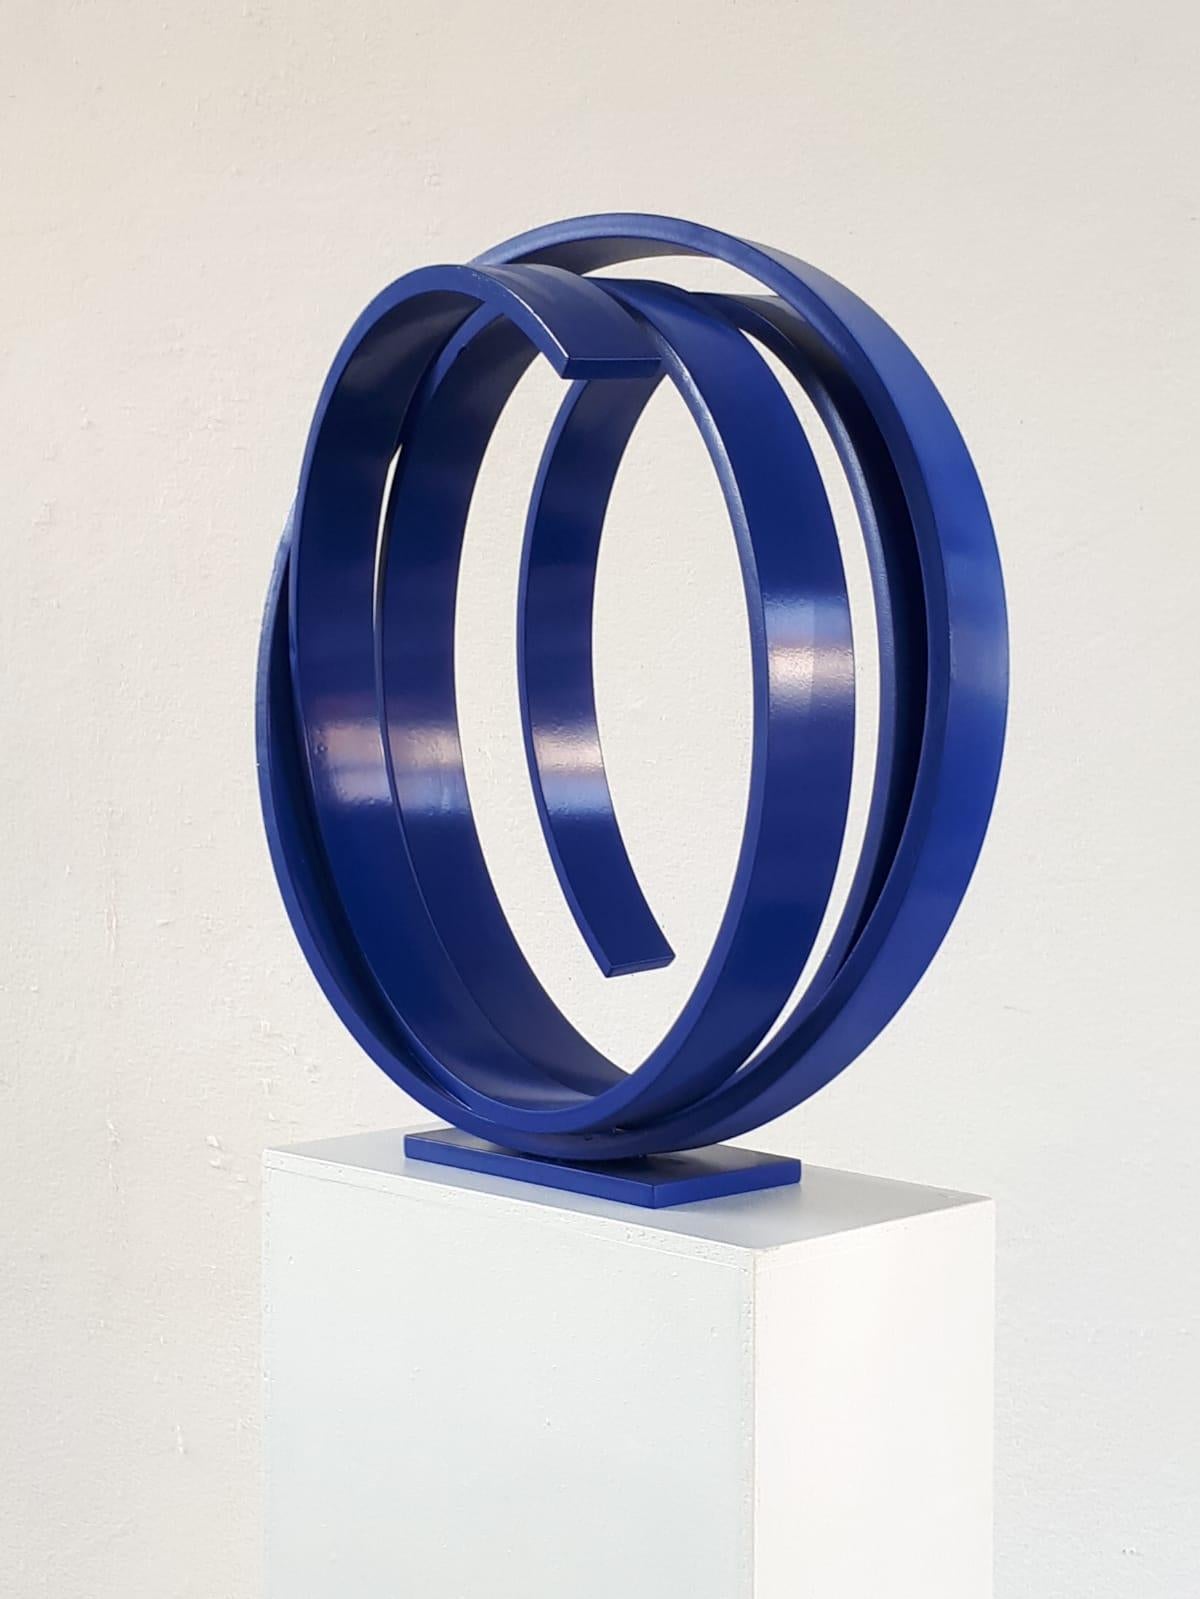 Blaue Orbit von Kuno Vollet - Zeitgenössische abstrakte runde blaue Stahlskulptur